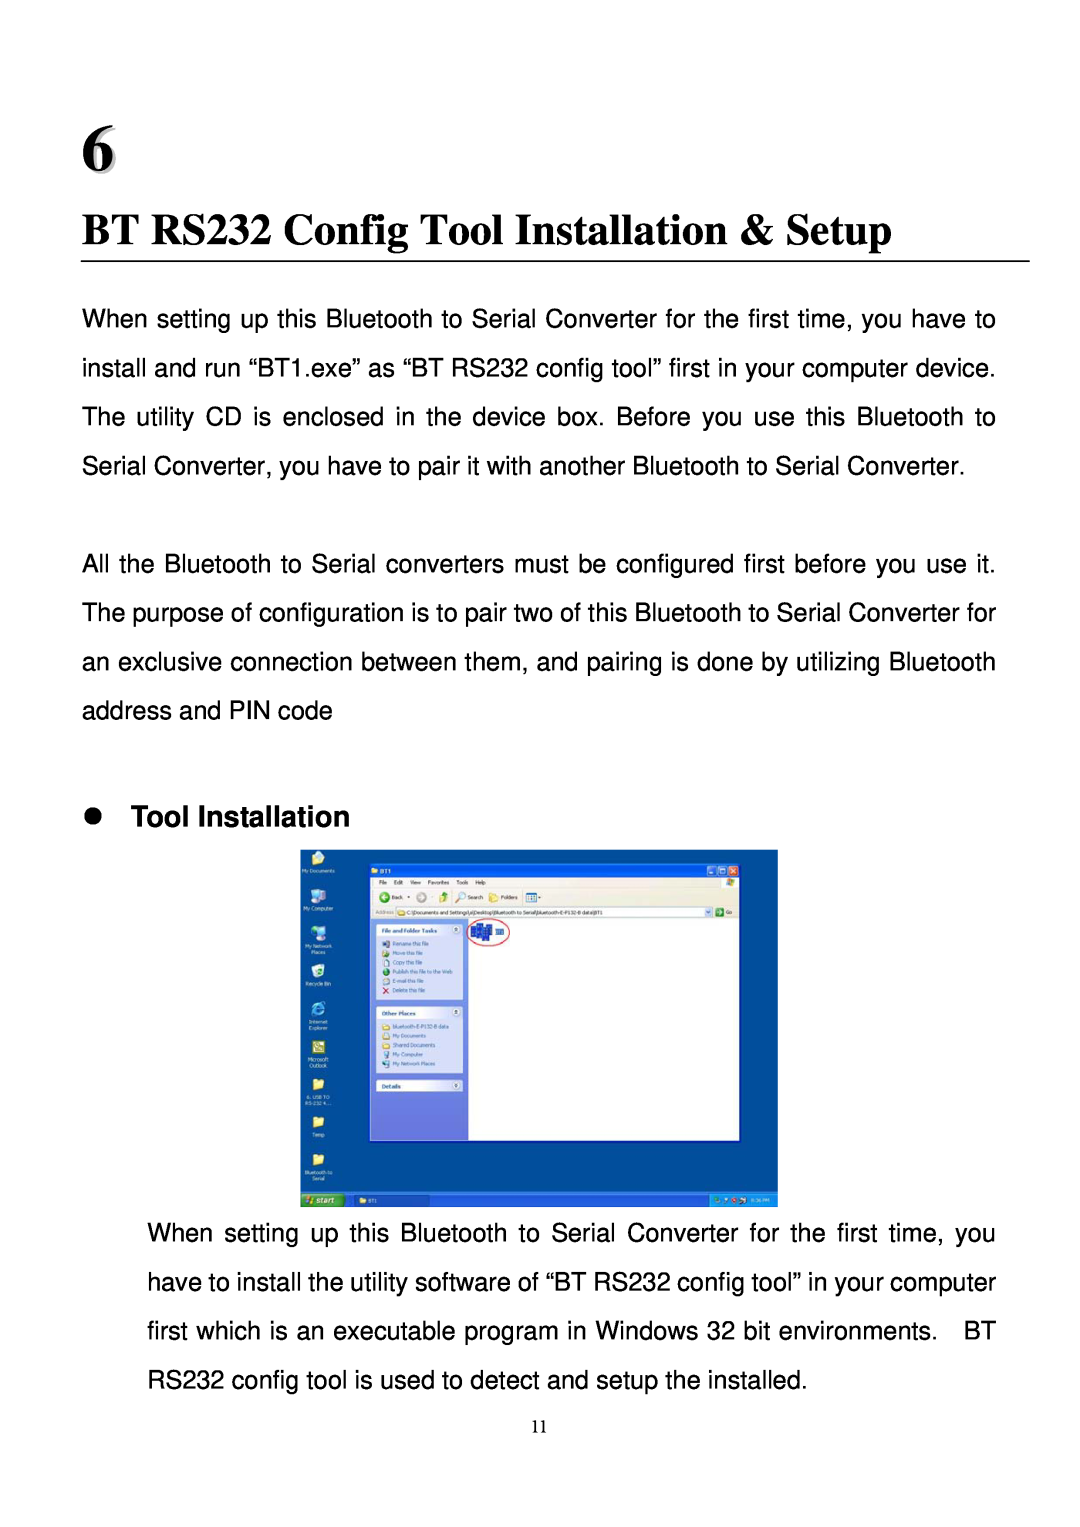 Quatech SS-BLT-400 operation manual BT RS232 Config Tool Installation & Setup 